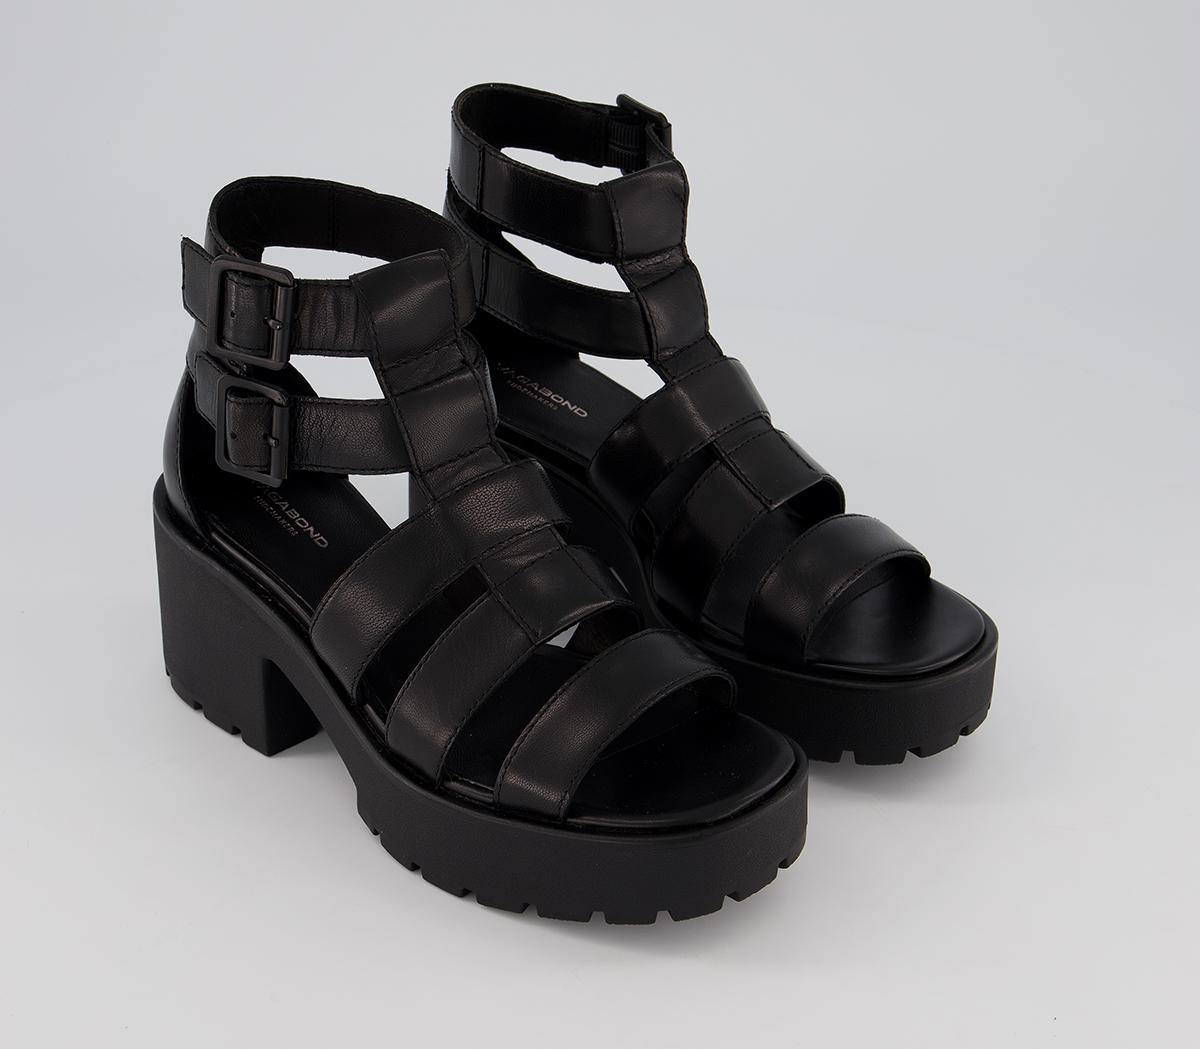 Vagabond Shoemakers Dioon Strap Sandals Black - Women’s Sandals